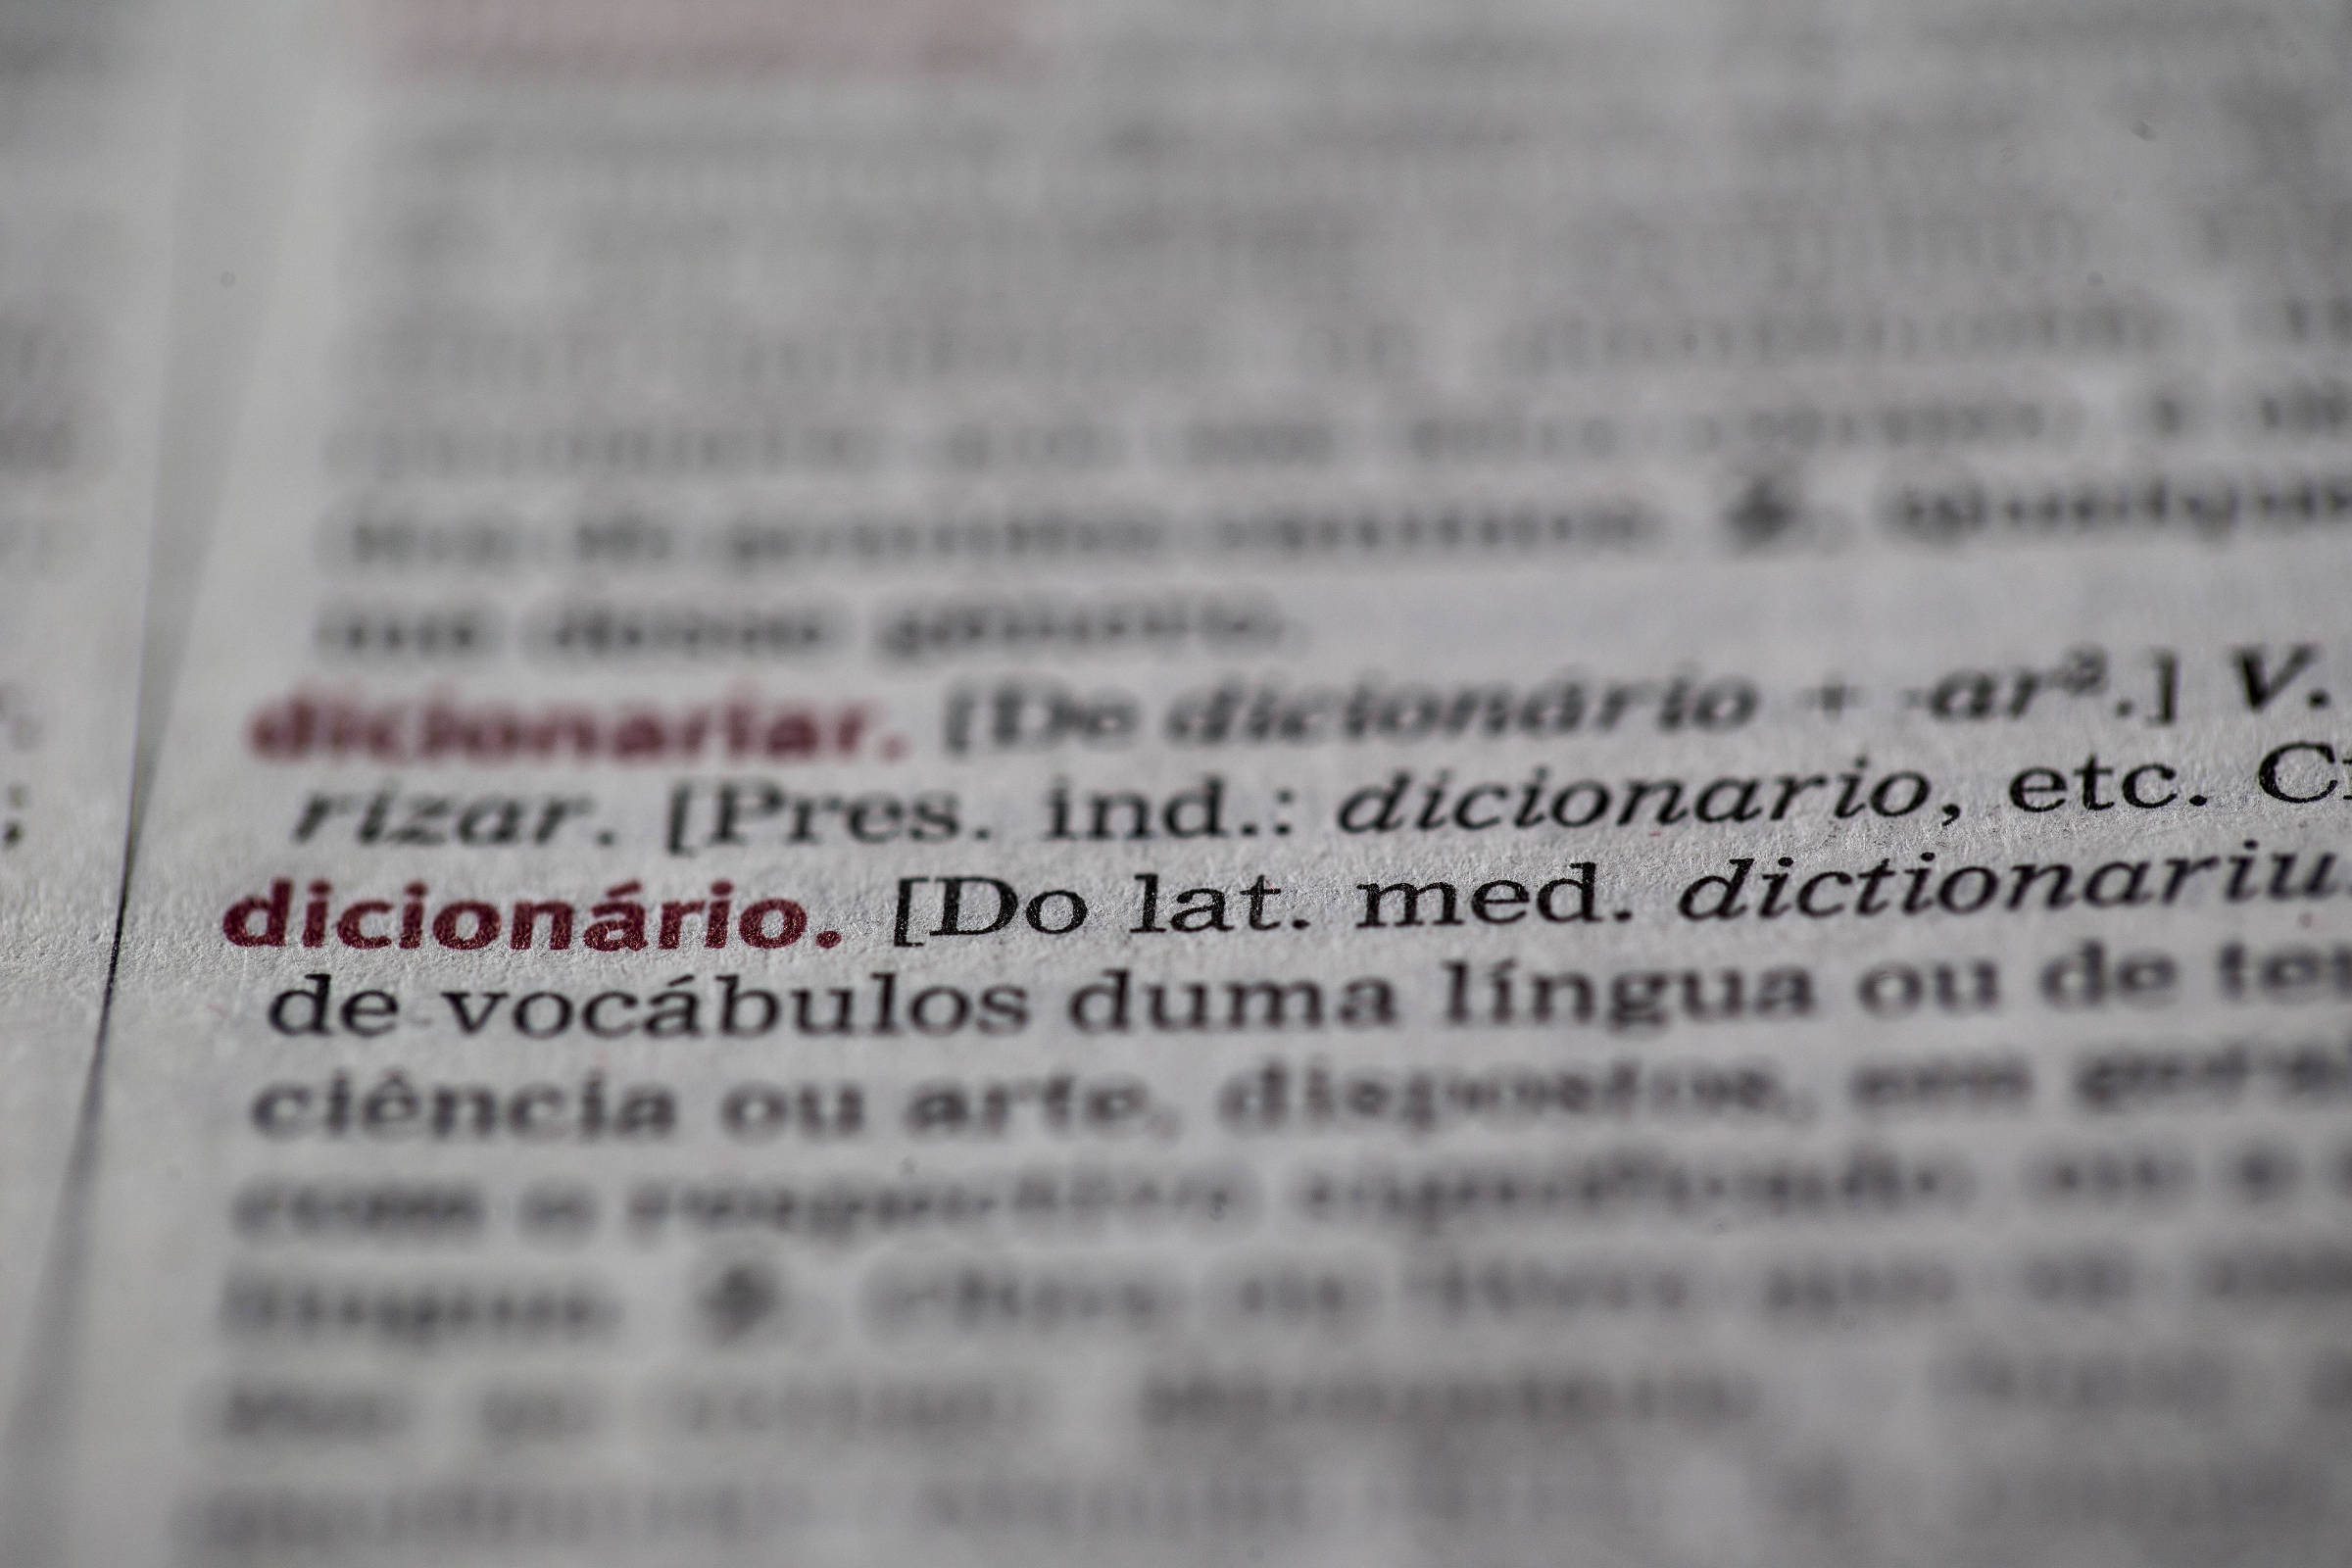 Dicionário das Ciências da Saúde no Brasil ganha 40 anos de